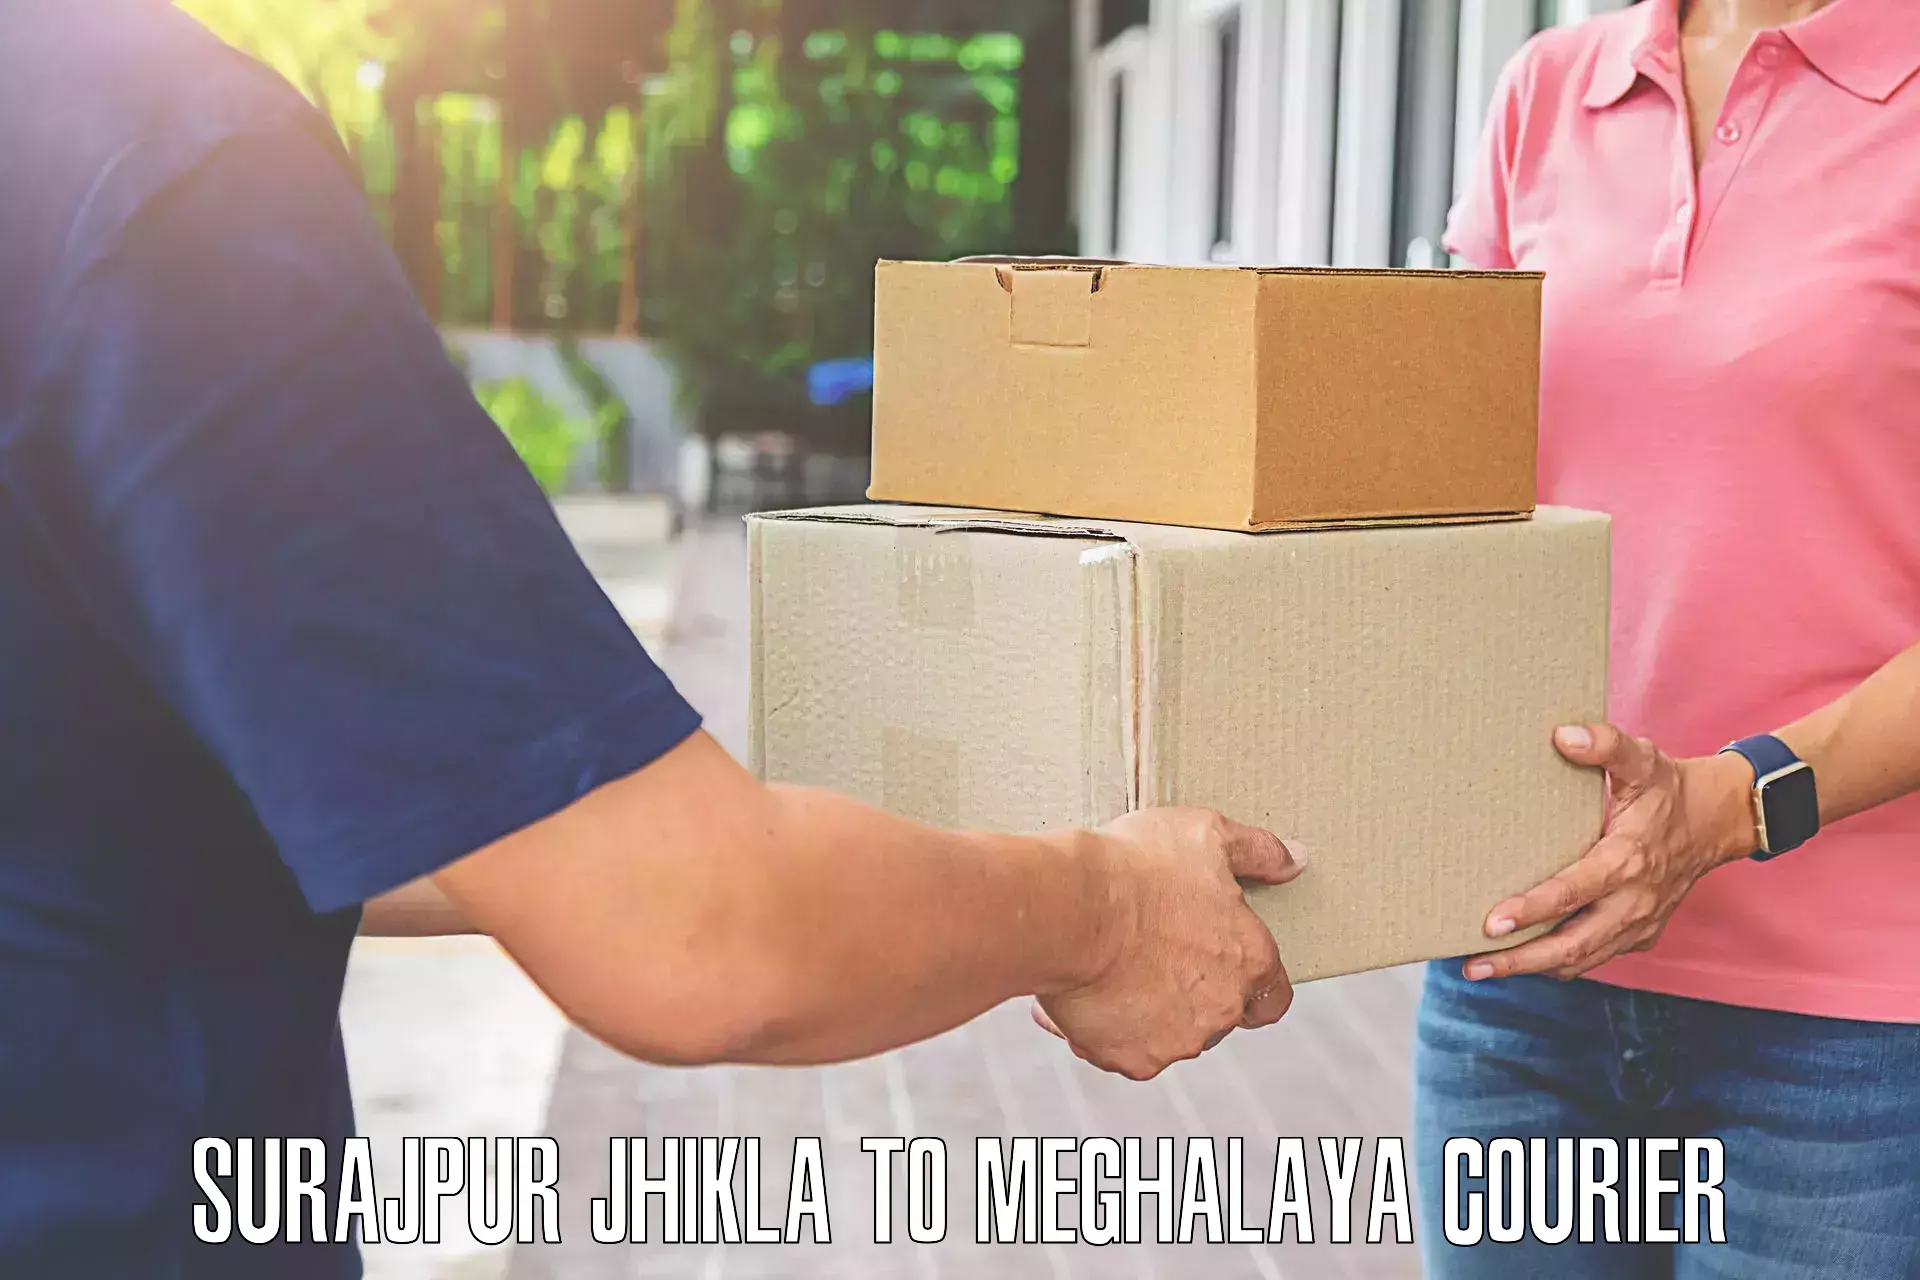 Digital baggage courier Surajpur Jhikla to Meghalaya